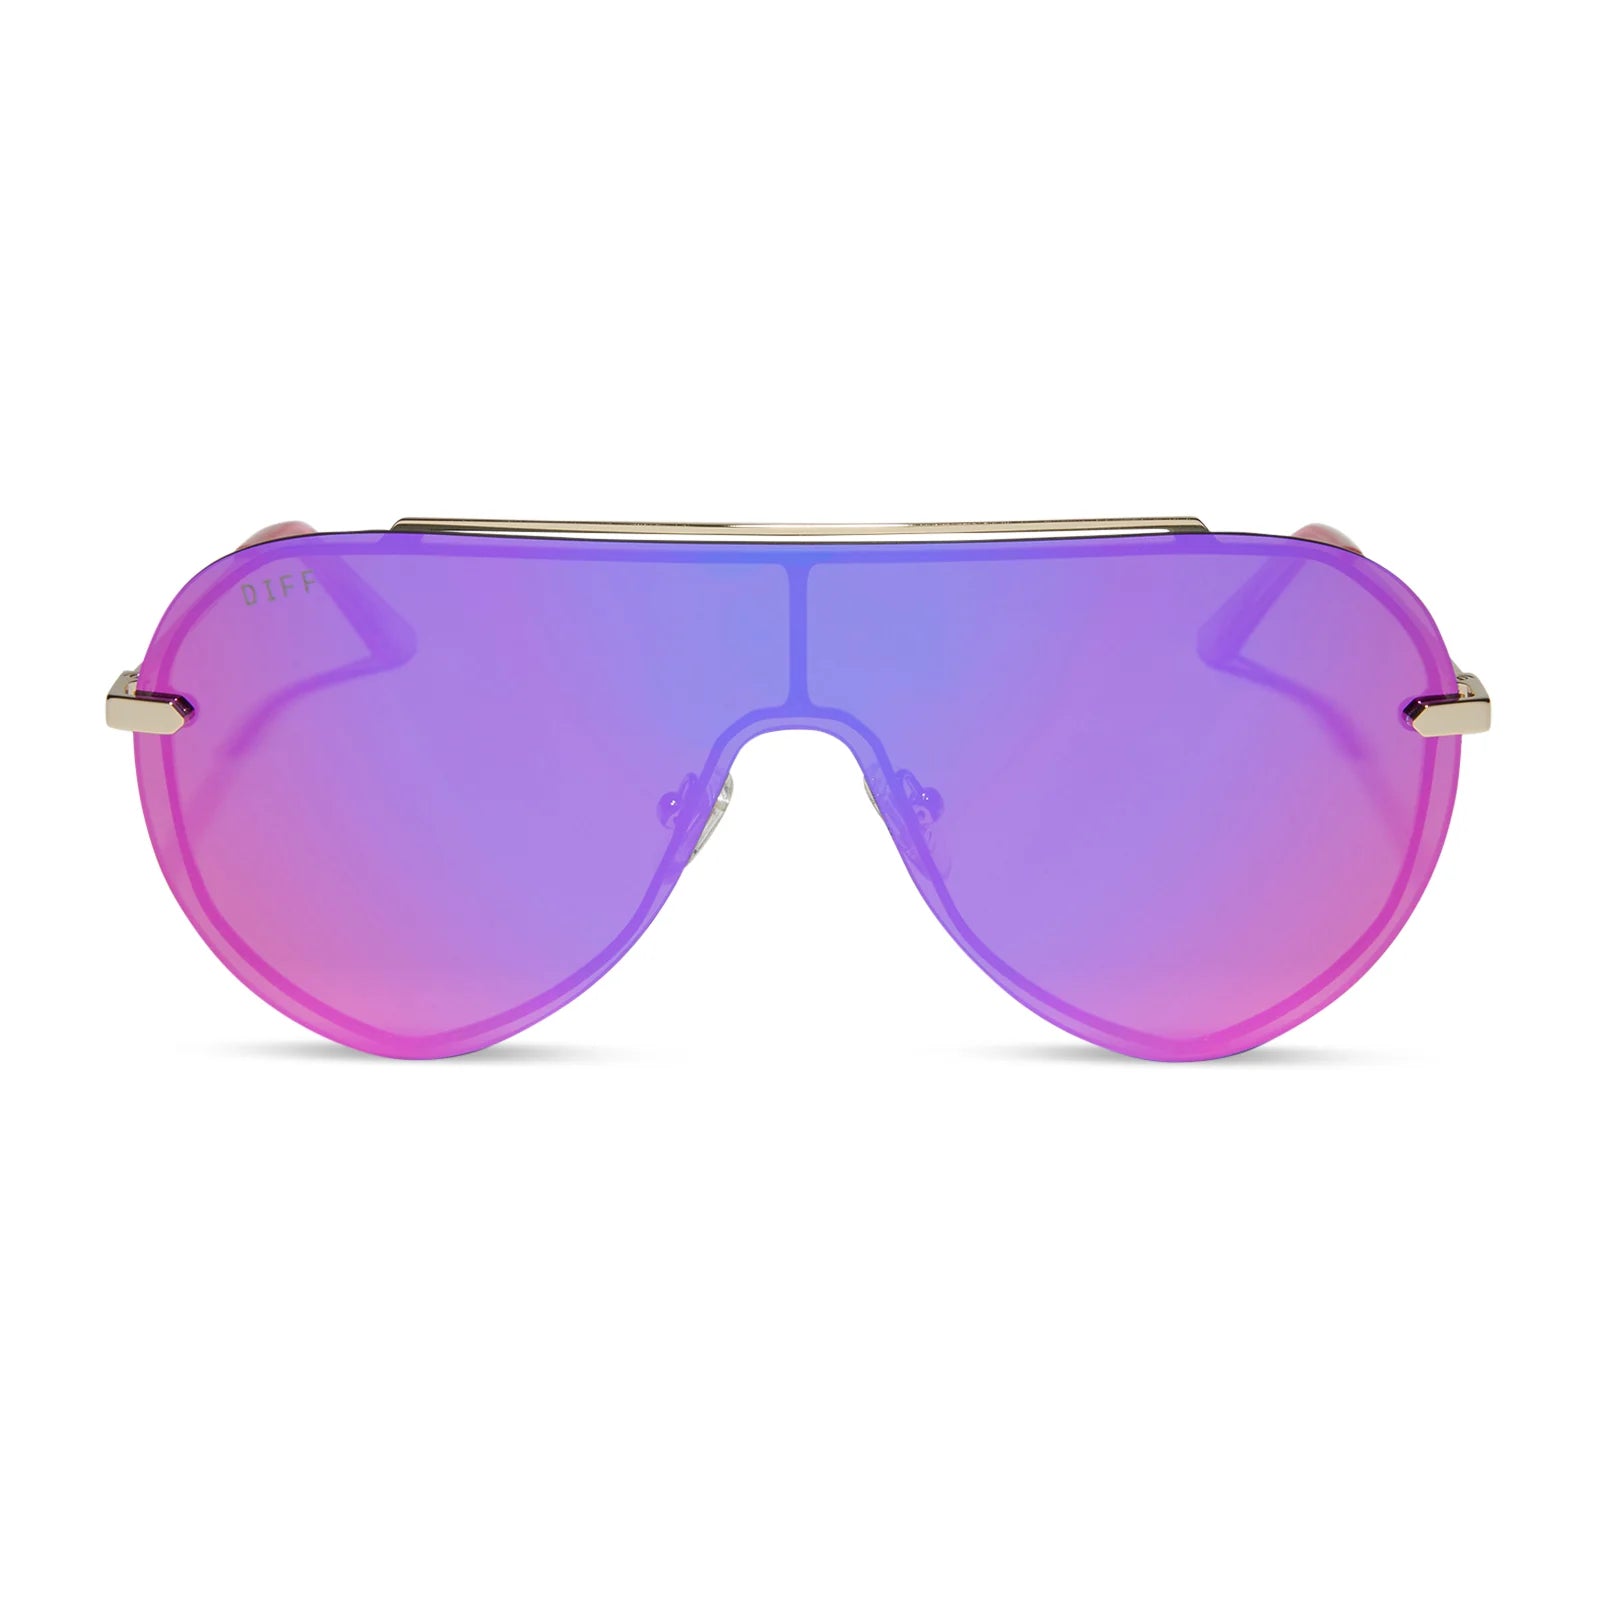 Imani Shield Sunglasses | DIFF